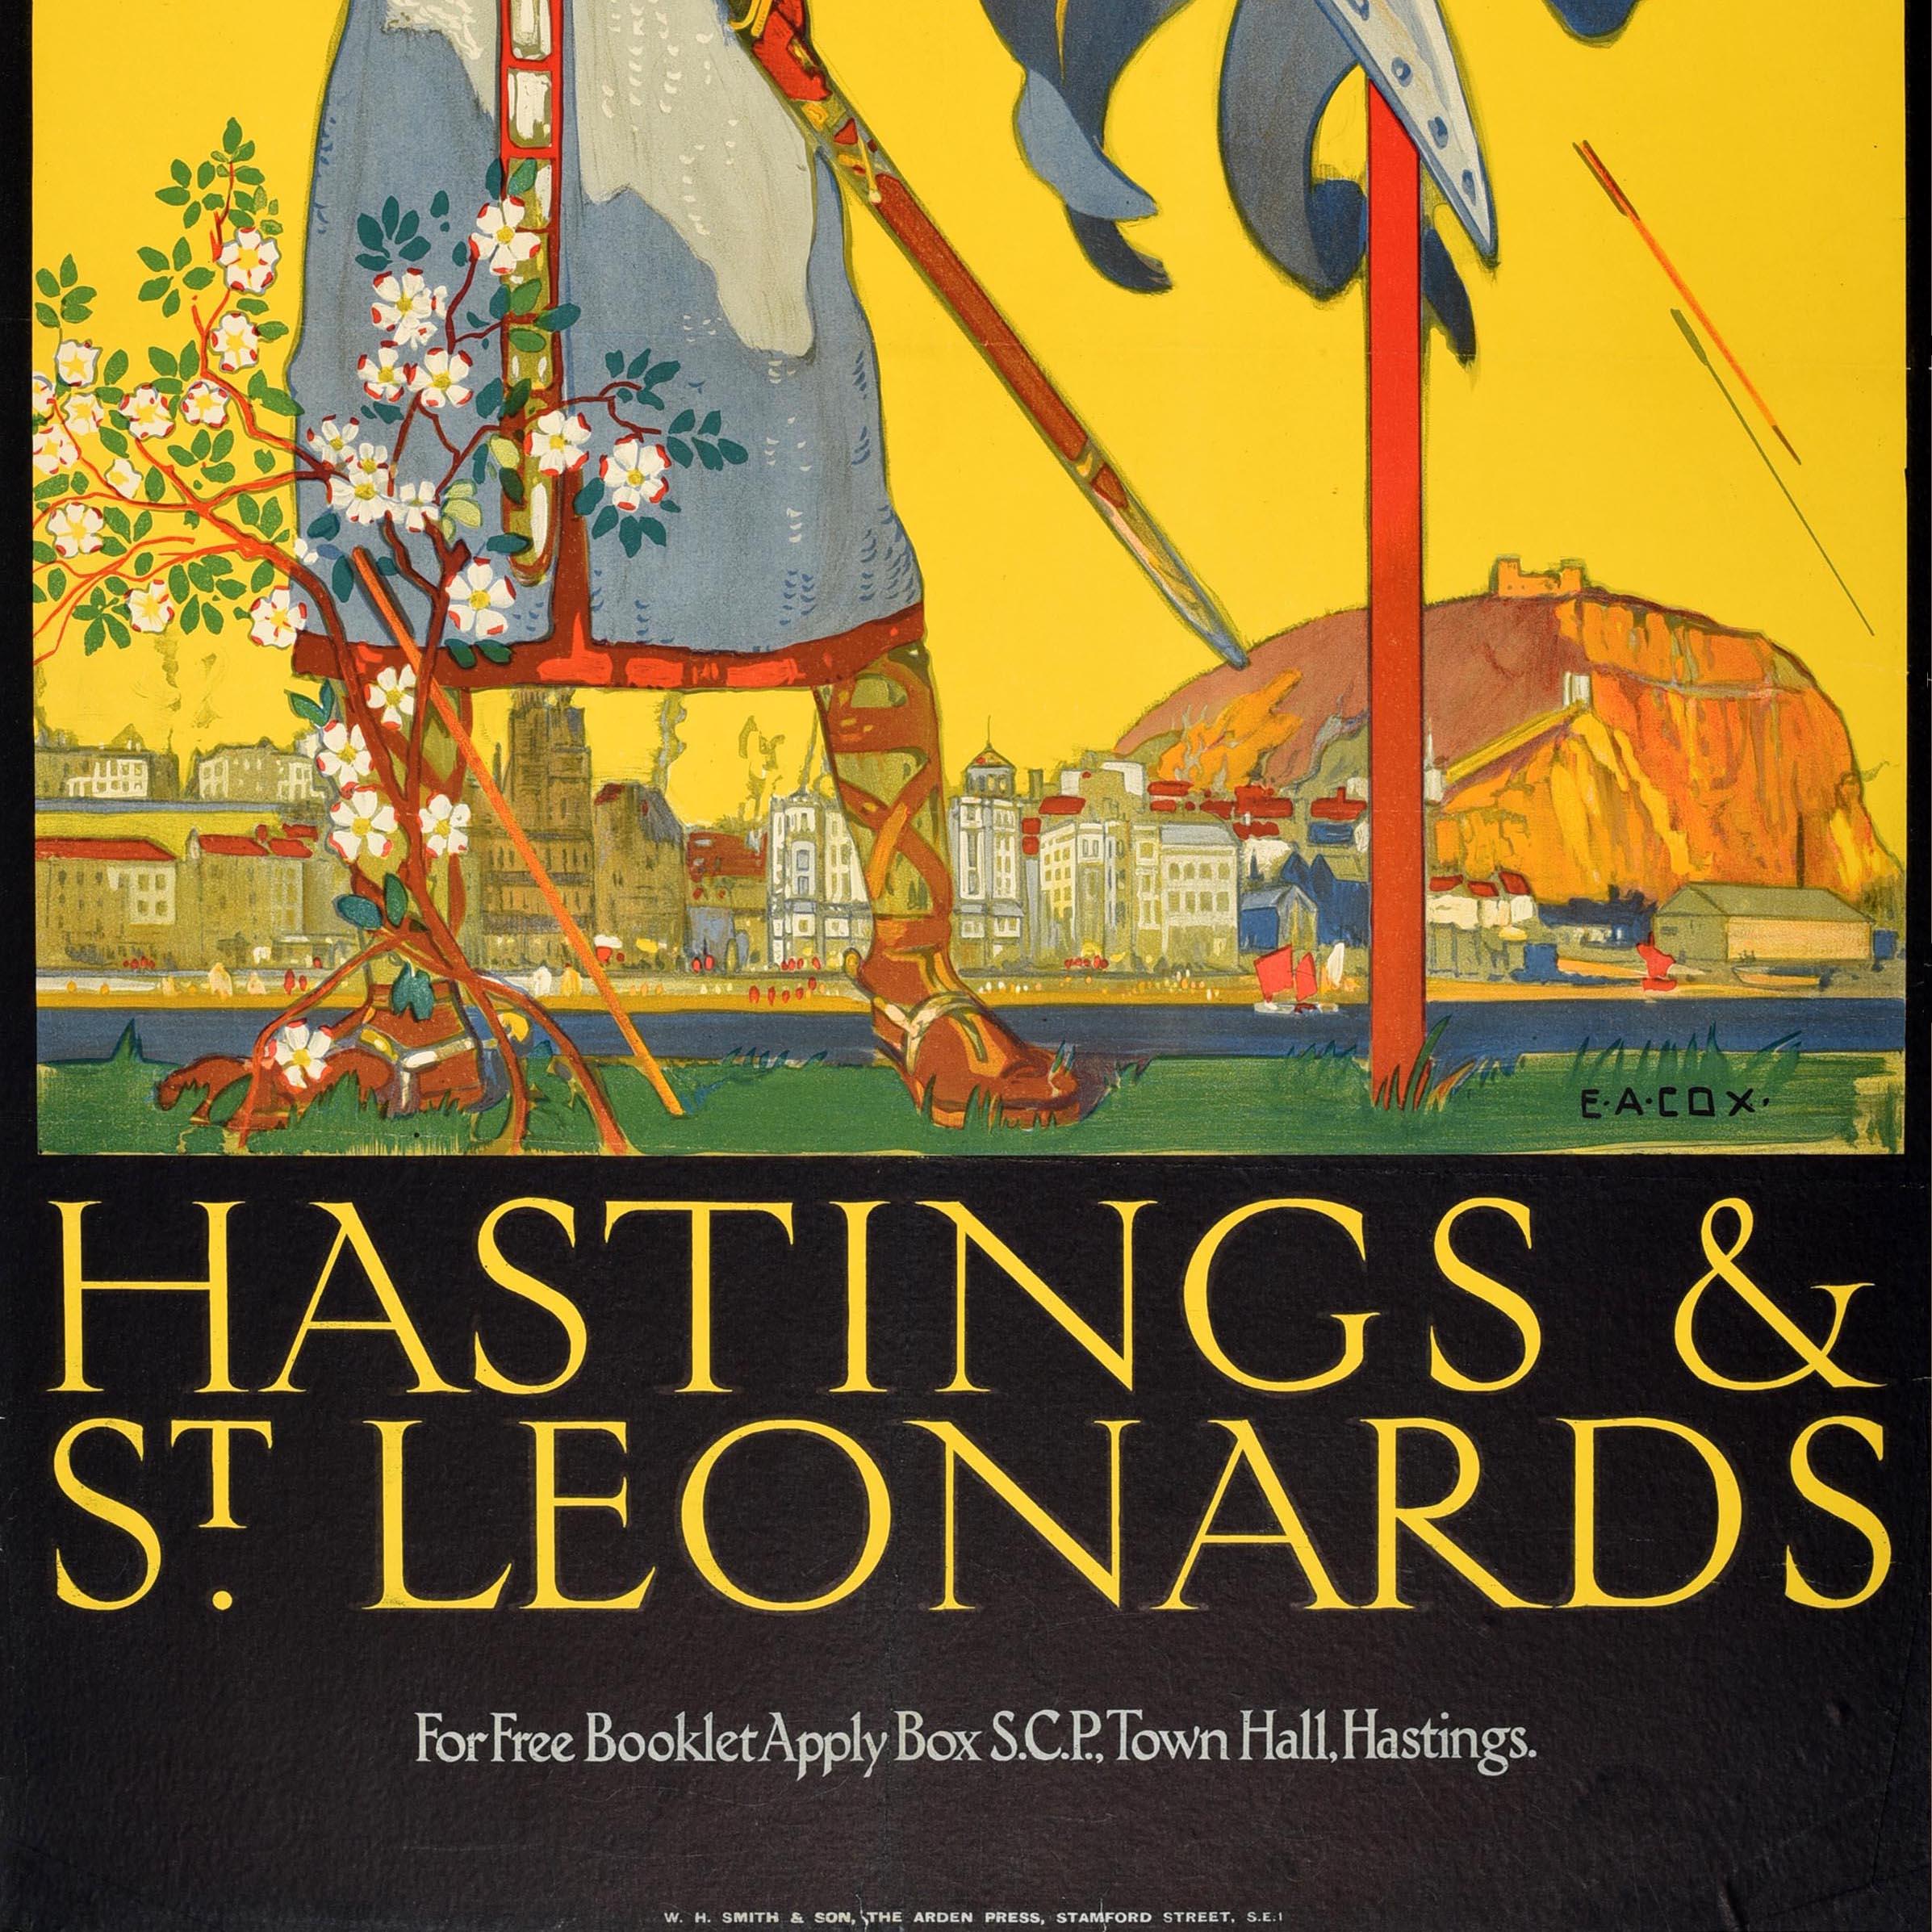 Affiche de voyage originale d'époque pour les villes historiques de la côte sud de Hastings et St Leonards dans le Sussex, avec une superbe illustration du peintre britannique Elijah Albert Cox (1876-1955) représentant des flèches tirant sur un